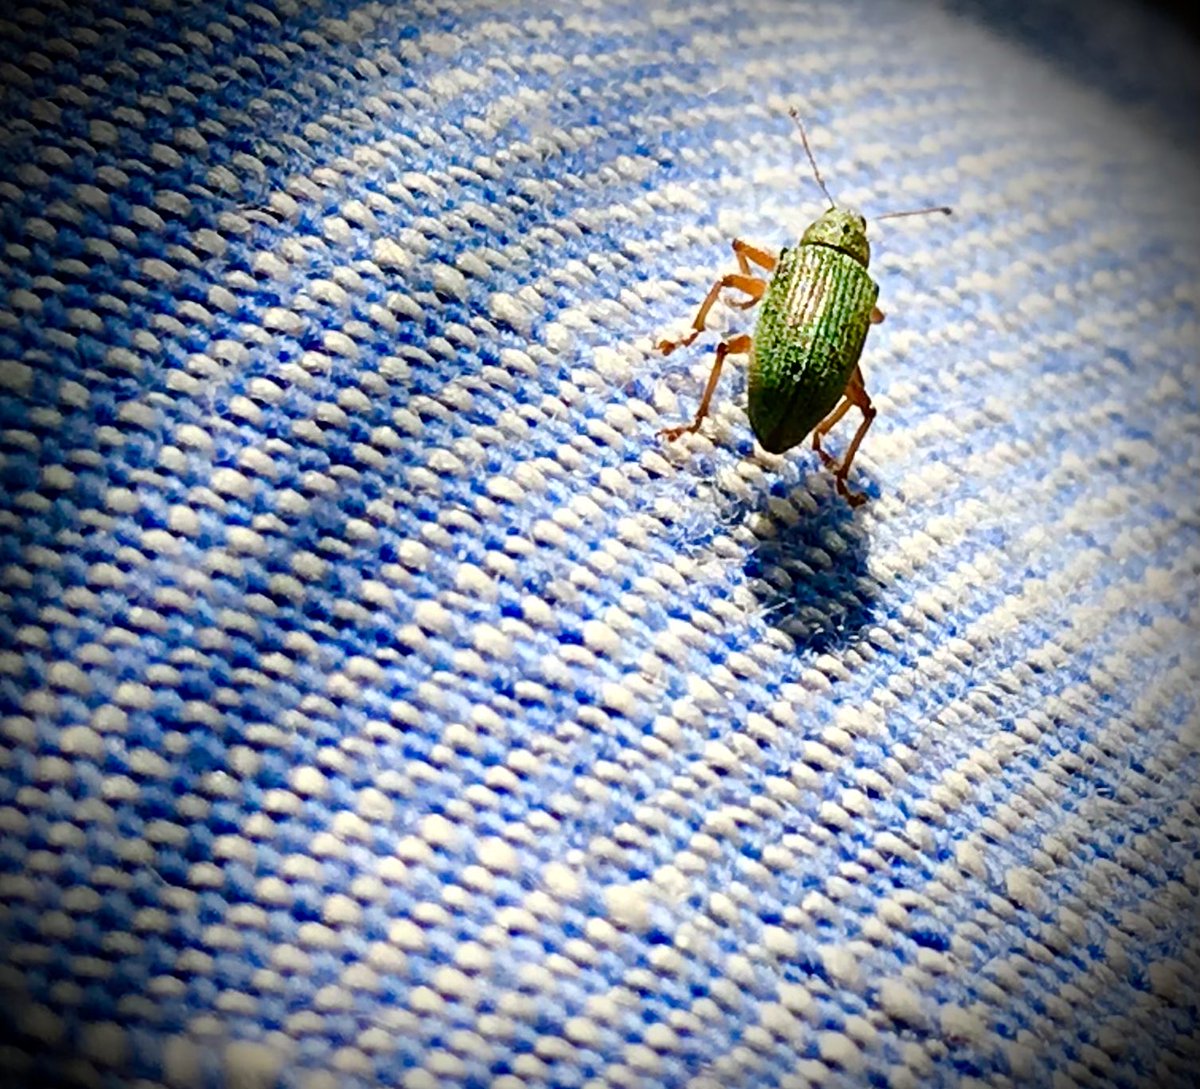 #mei_nmooistefotos #InsectenEnGeleedpotigen. Deze Groene snuitstruikkever belandde onlangs op mijn broek…⁦@bosw8er_jochem⁩